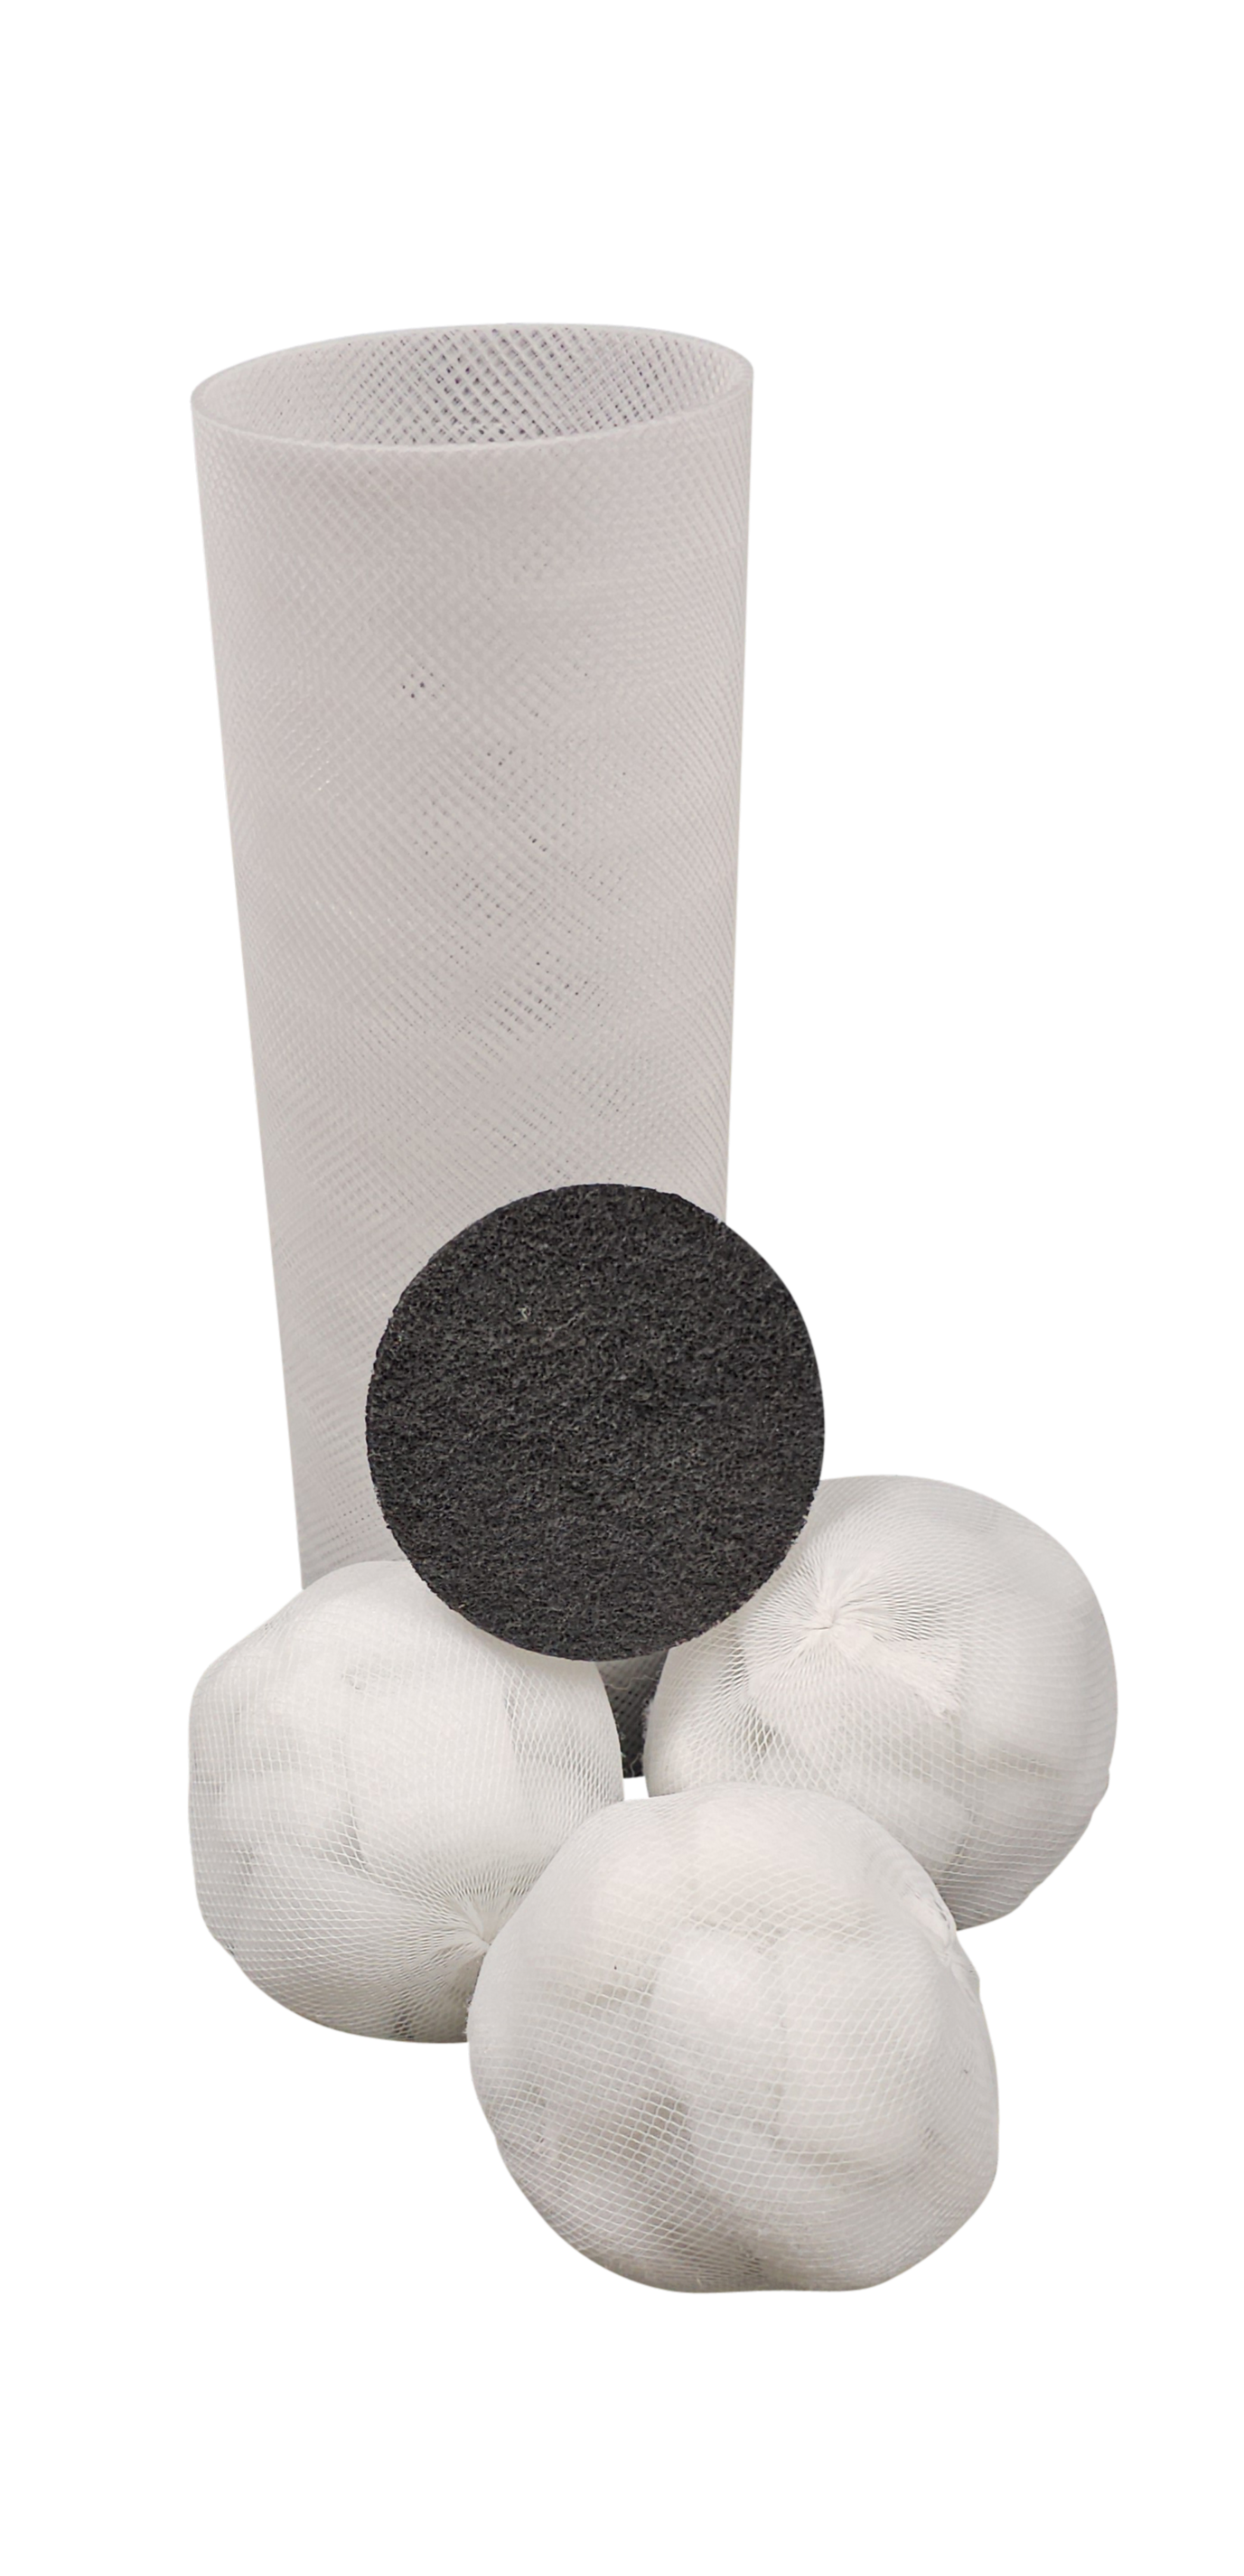 PureFlow LongLife Kartuschenfilter: Mehrweg-Filtergehäuse mit adaptiven Gehäuseboden für jeden Pool. Filterballs austauschbar, hohe Trennschärfe – Filtration unter 1 Mikron. Herstellerunabhängig, reduziert Müll, spart Kosten. Inkl PureFlow Aktivkohle.